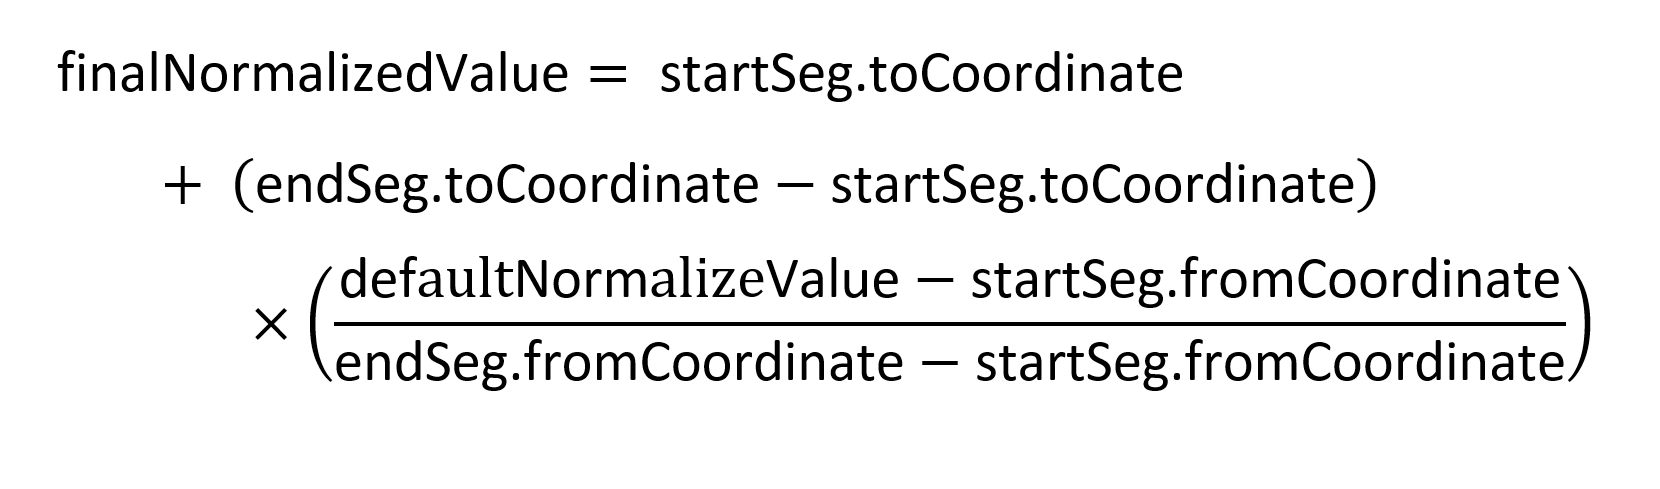 formula for finalNormalizedValue